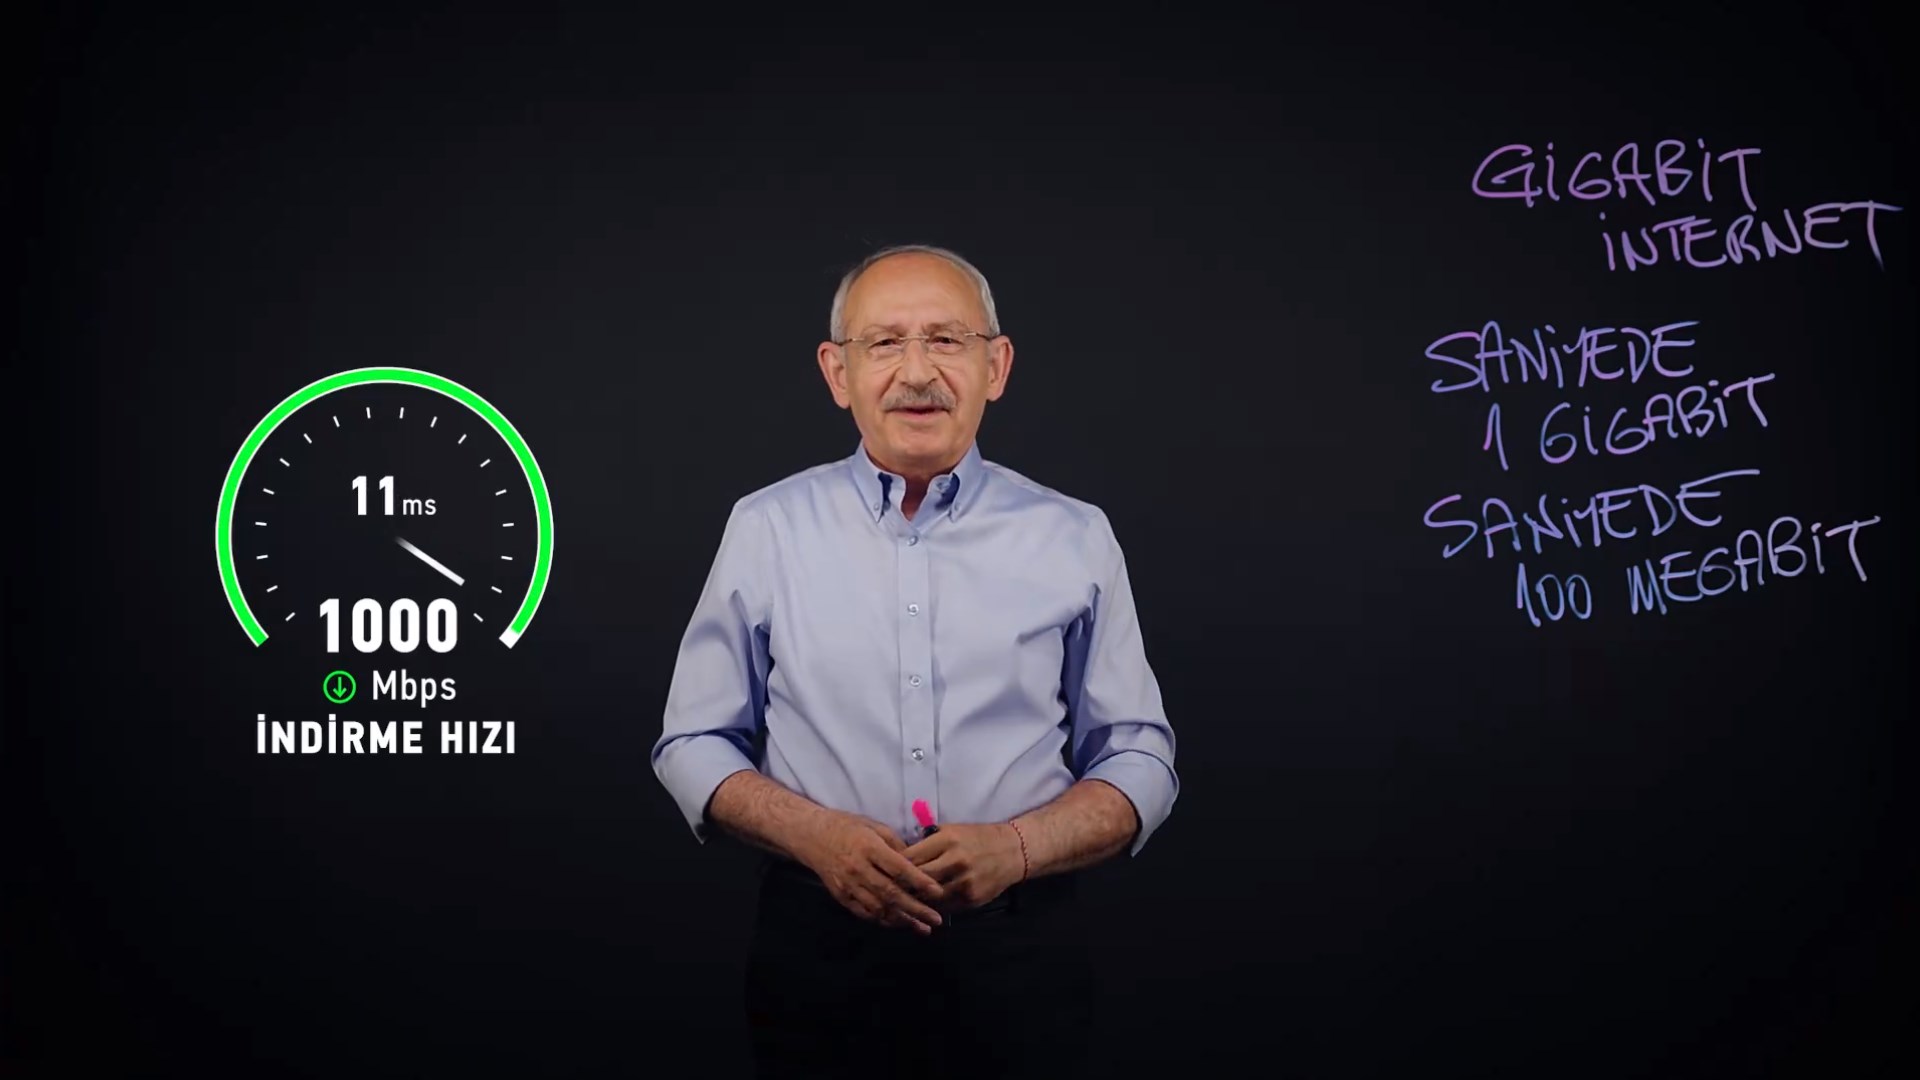 Kılıçdaroğlu’ndan internet atılımı: Büyükşehirlere 1 gigabit hız!